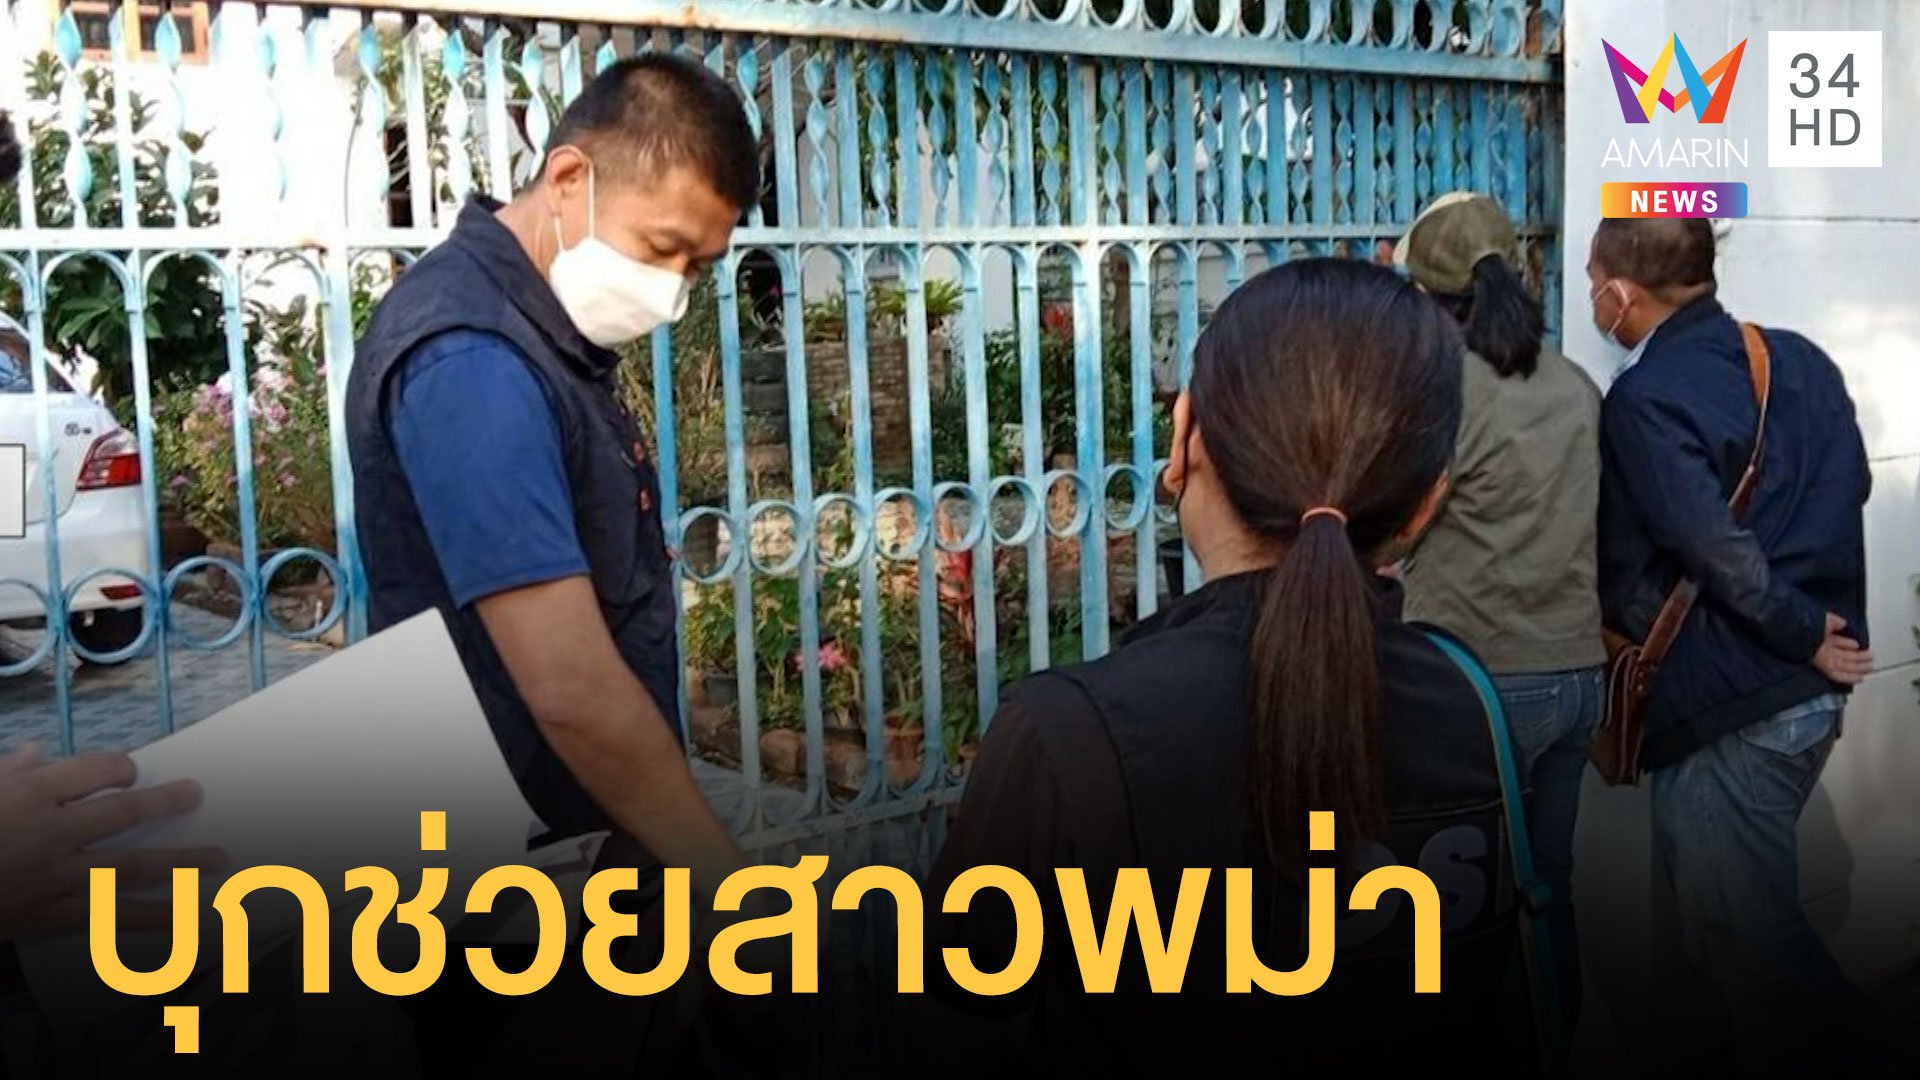 ตร.บุกช่วยสาวพม่า เป็นคนใช้ถูกขัง 13 ปีไม่ได้เงินเดือน | ข่าวอรุณอมรินทร์ | 6 ธ.ค. 64 | AMARIN TVHD34